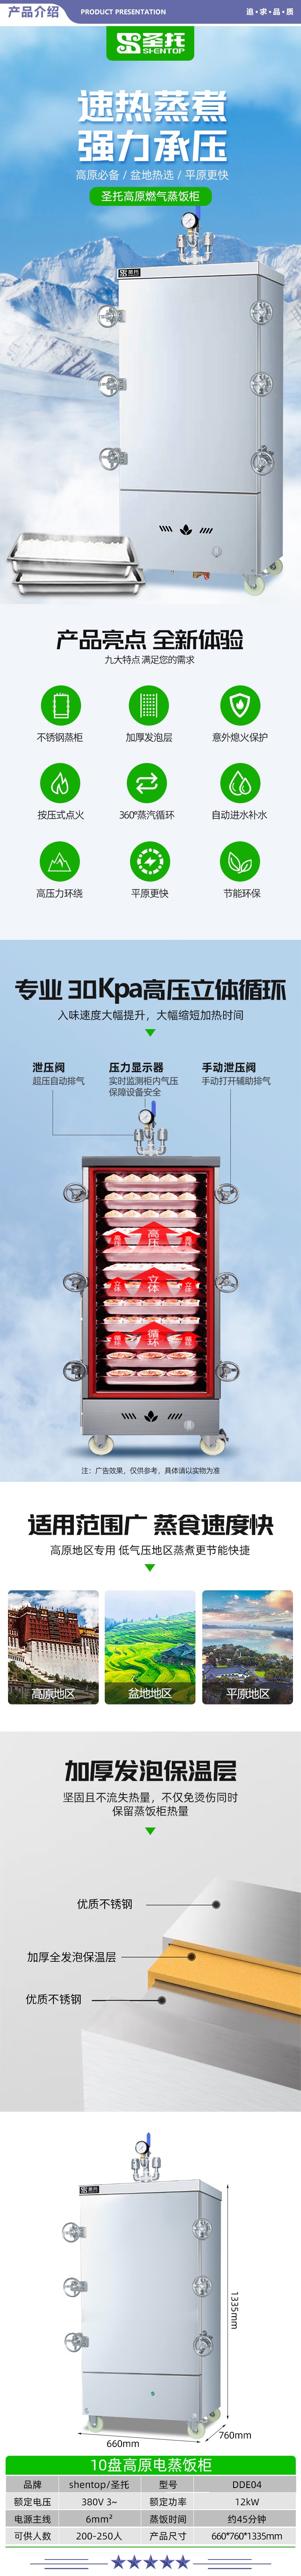 圣托（Shentop） DDE04 高原蒸饭柜 10盘单门电蒸柜蒸饭车高压智能全自动电蒸箱节能海鲜蒸柜 2.jpg